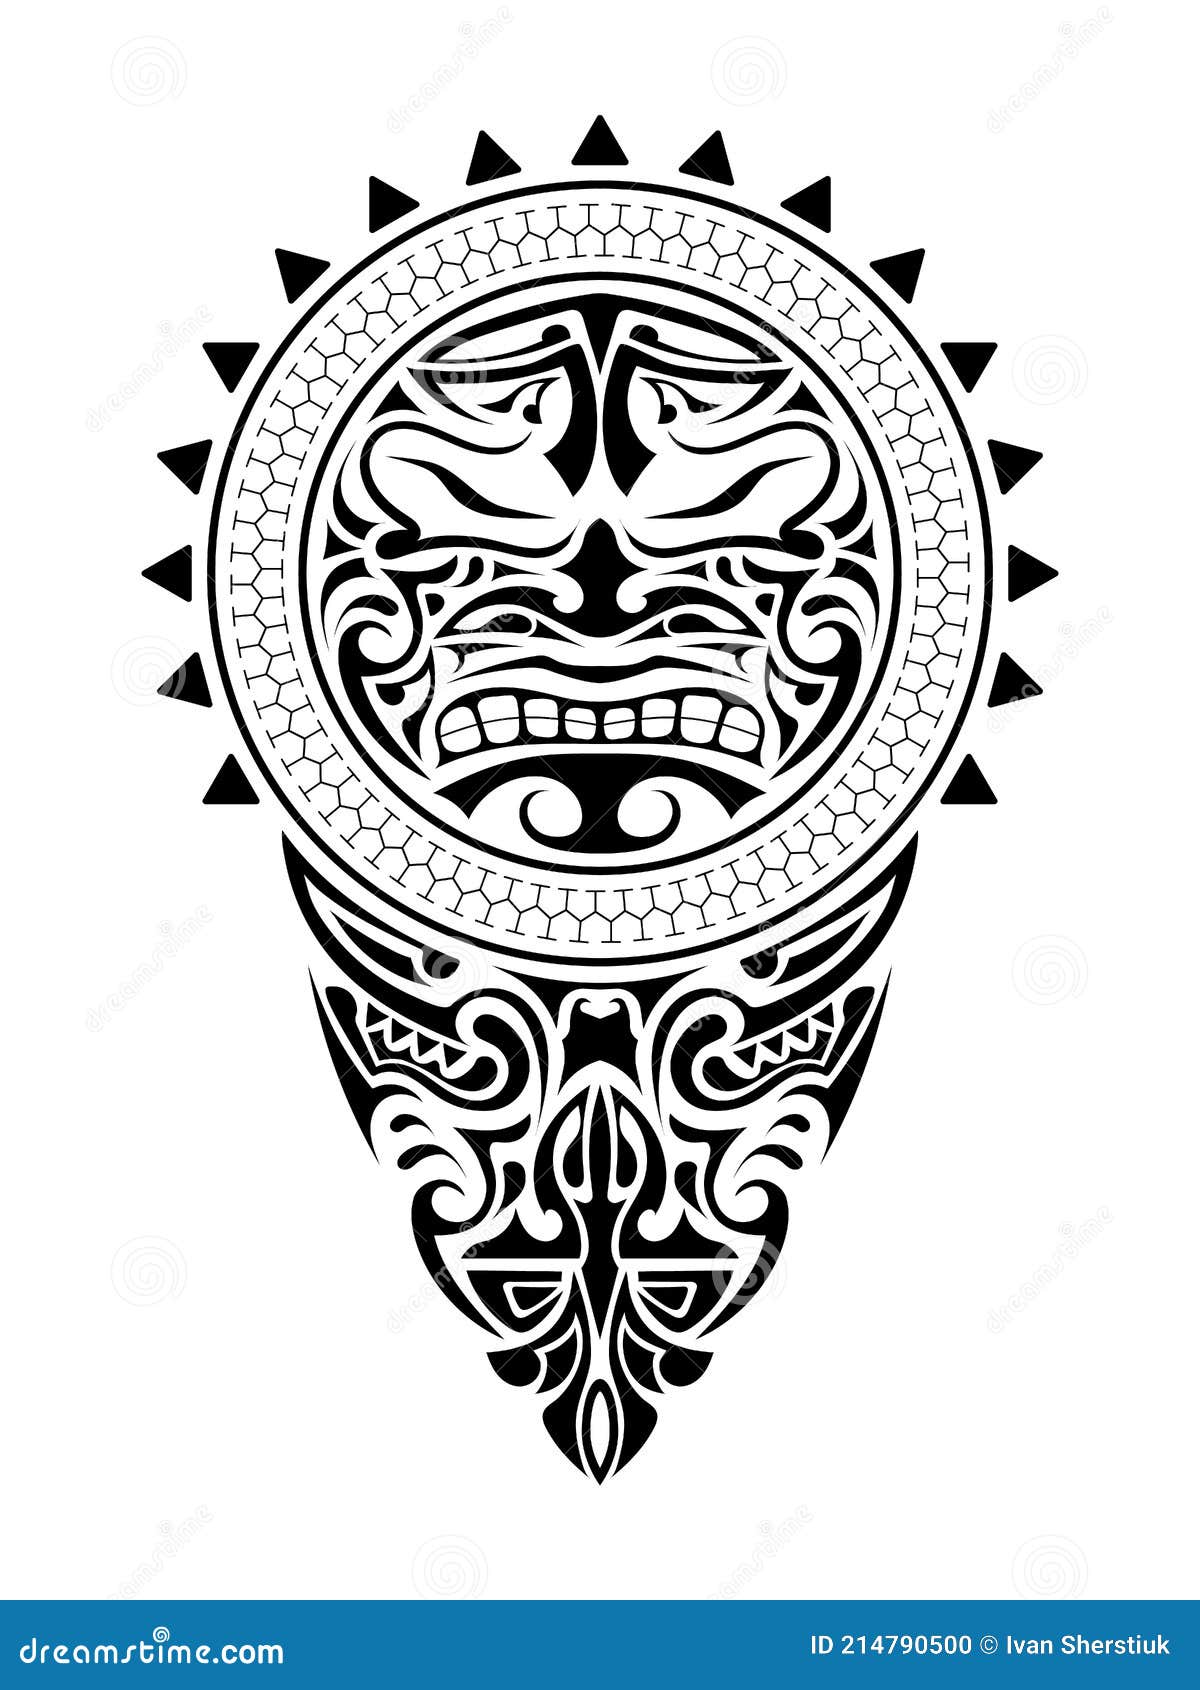 indian armband tattoo Apache indian armband tattoo Apache indian ... |  Indian tattoo, Arm band tattoo, Apache indian